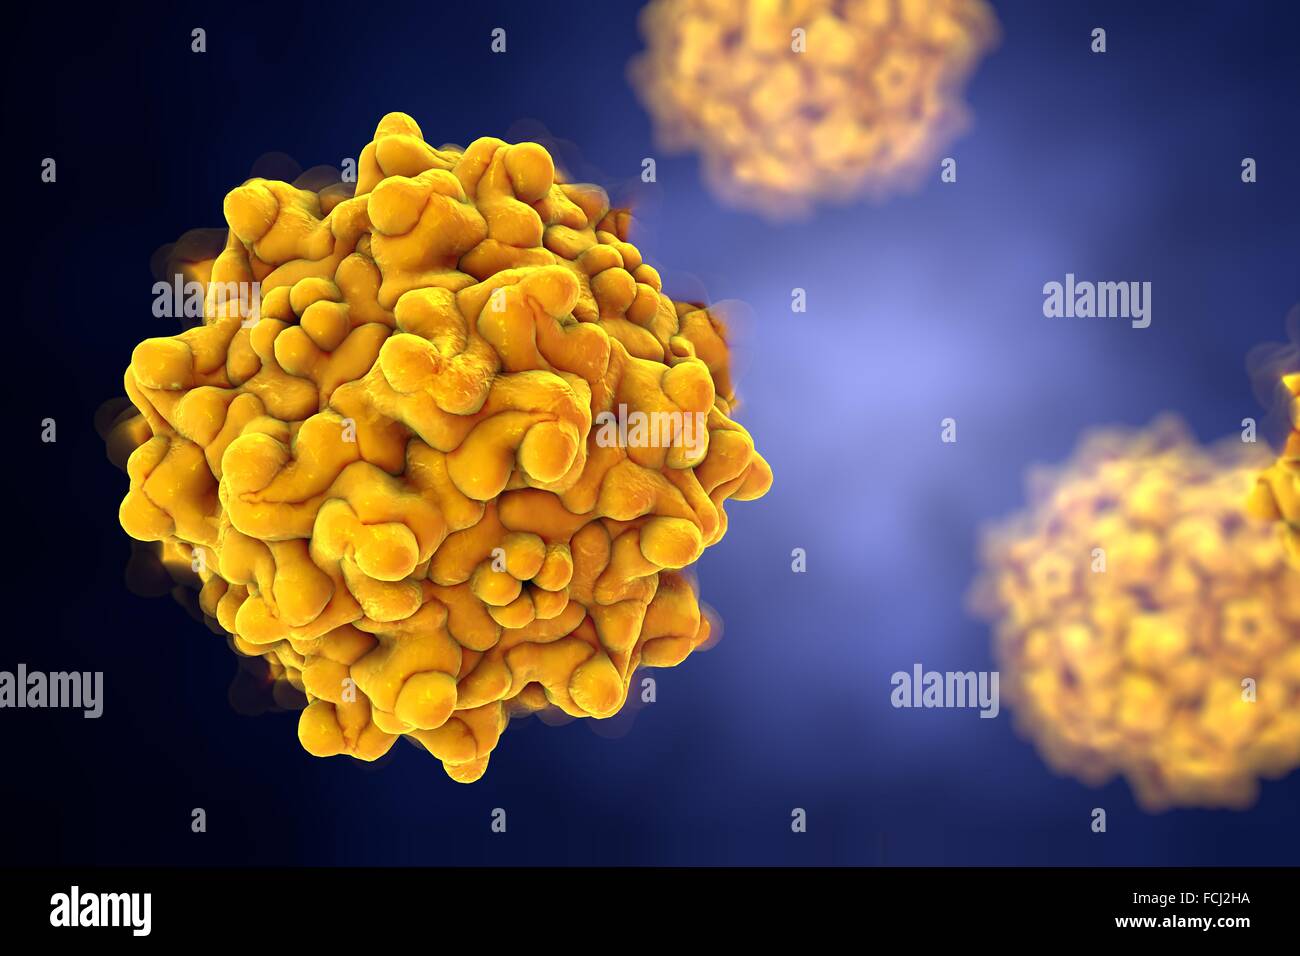 Adeno-associated virus, illustration de l'ordinateur. Adeno-associated virus (AAVs) sont les plus petits virus connus pour infecter les humains. Ils ne causent pas de maladies, et que provoquer une réponse immunitaire doux. Parce qu'elles intègrent leur matériel génétique dans un s Banque D'Images